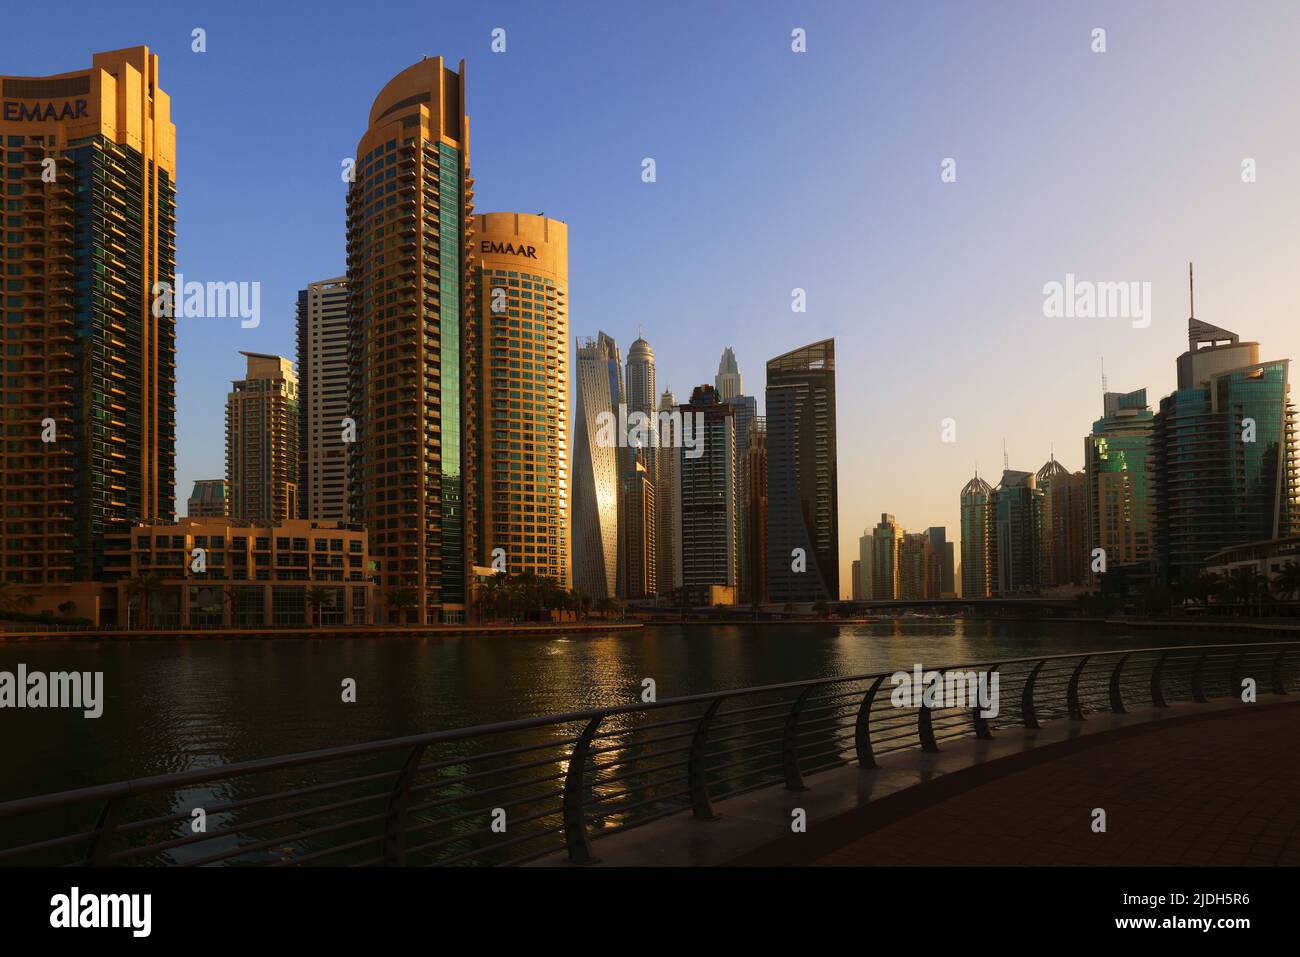 moderne Architektur, Dubai Marina, Atemberaubende Aussicht auf die Skyline von Dubai mit Bürohochhäuser und Hotels mit Spiegelung im Dubai Kanal Foto Stock